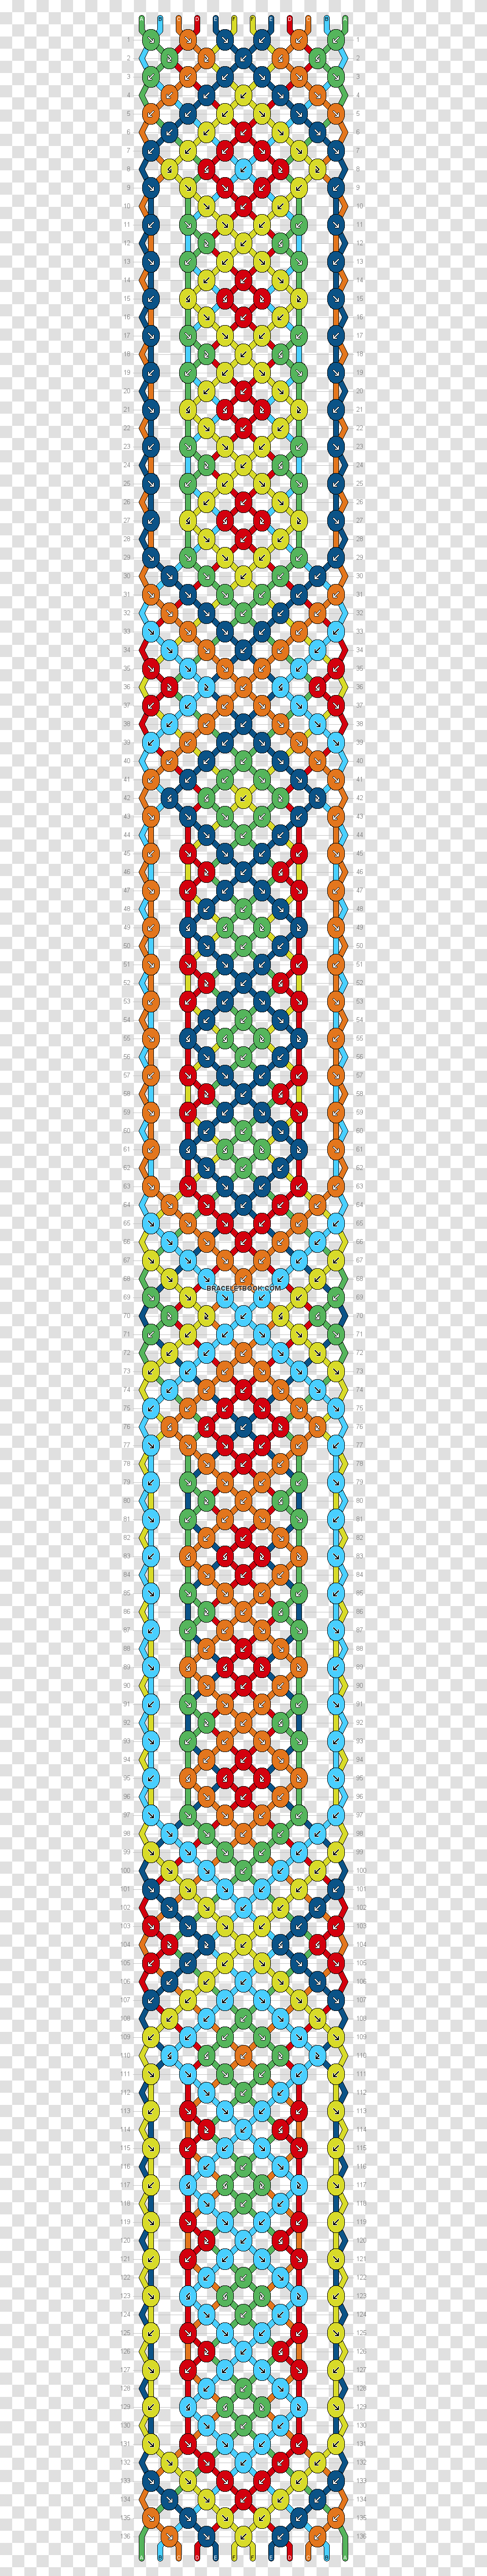 Popular Aztec Friendship Bracelet Pattern, Pac Man Transparent Png